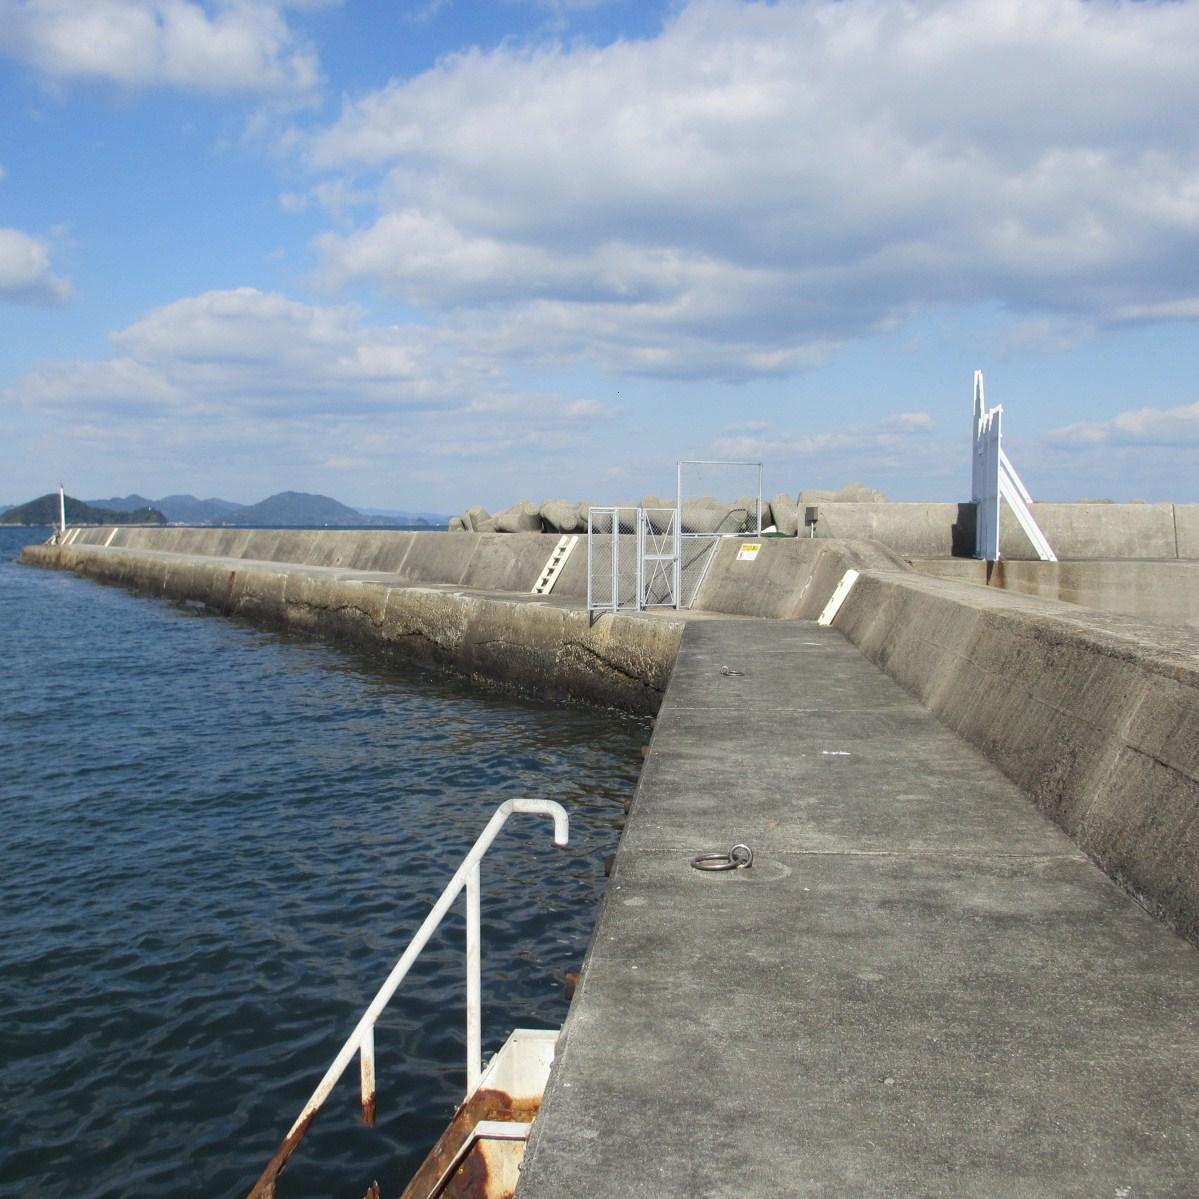 愛媛05・和気浜漁港 (6)